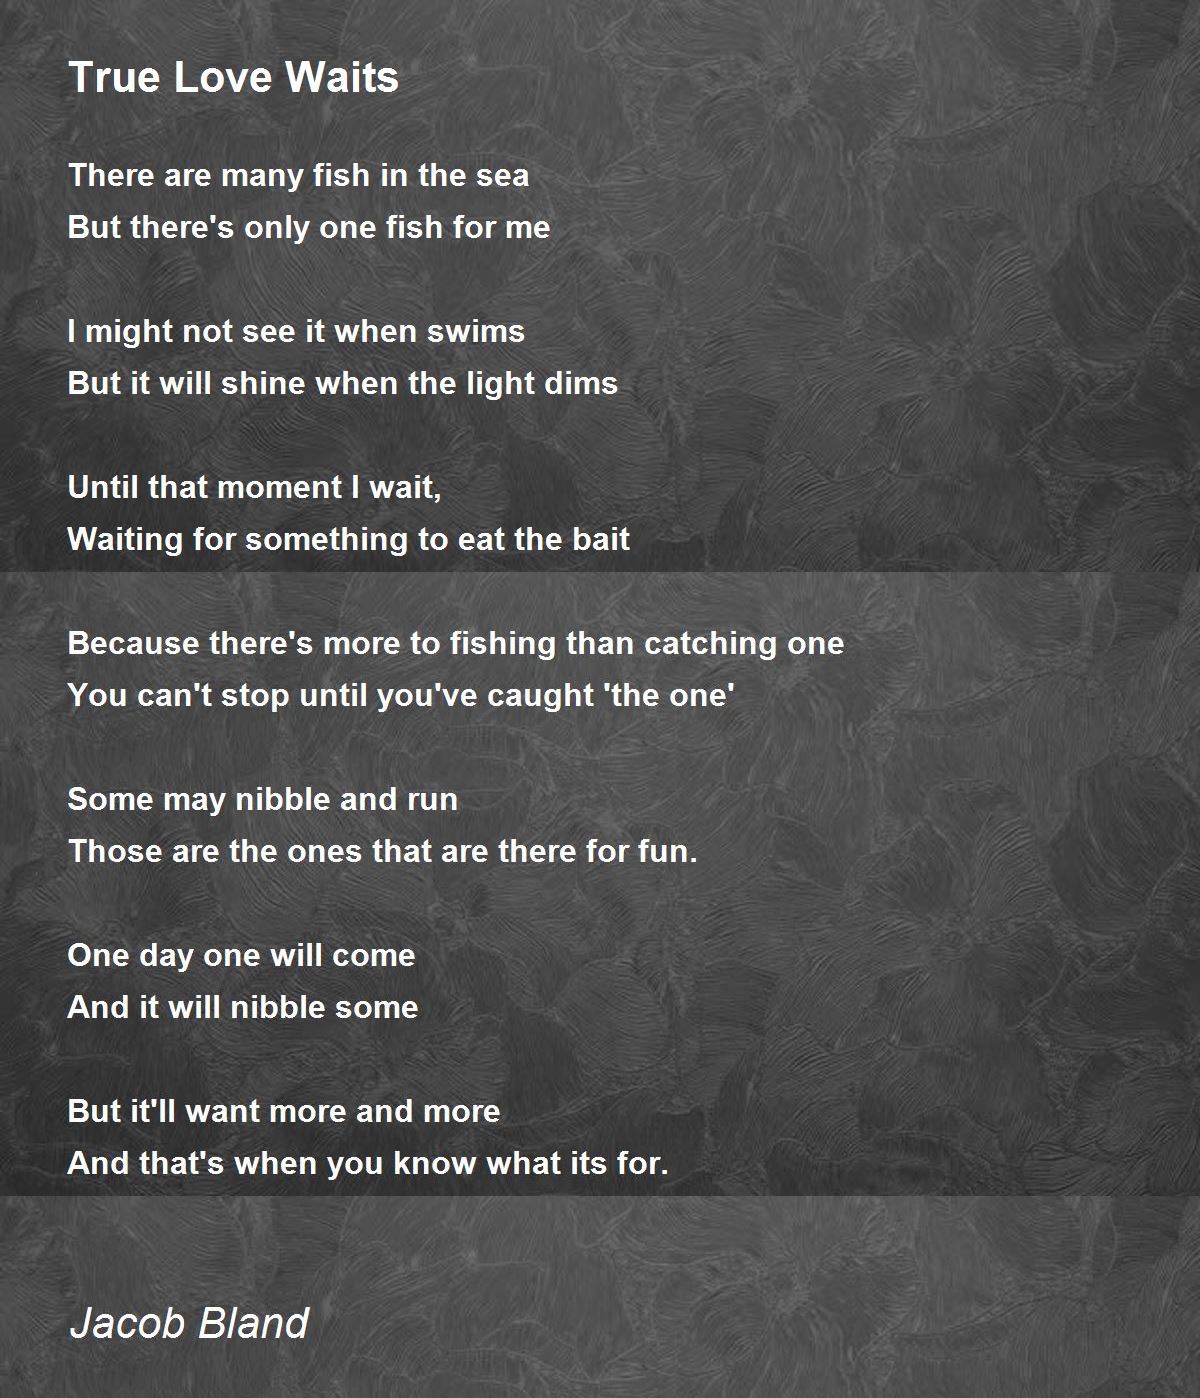 My True Love Waits, poem by Farren N. Keys